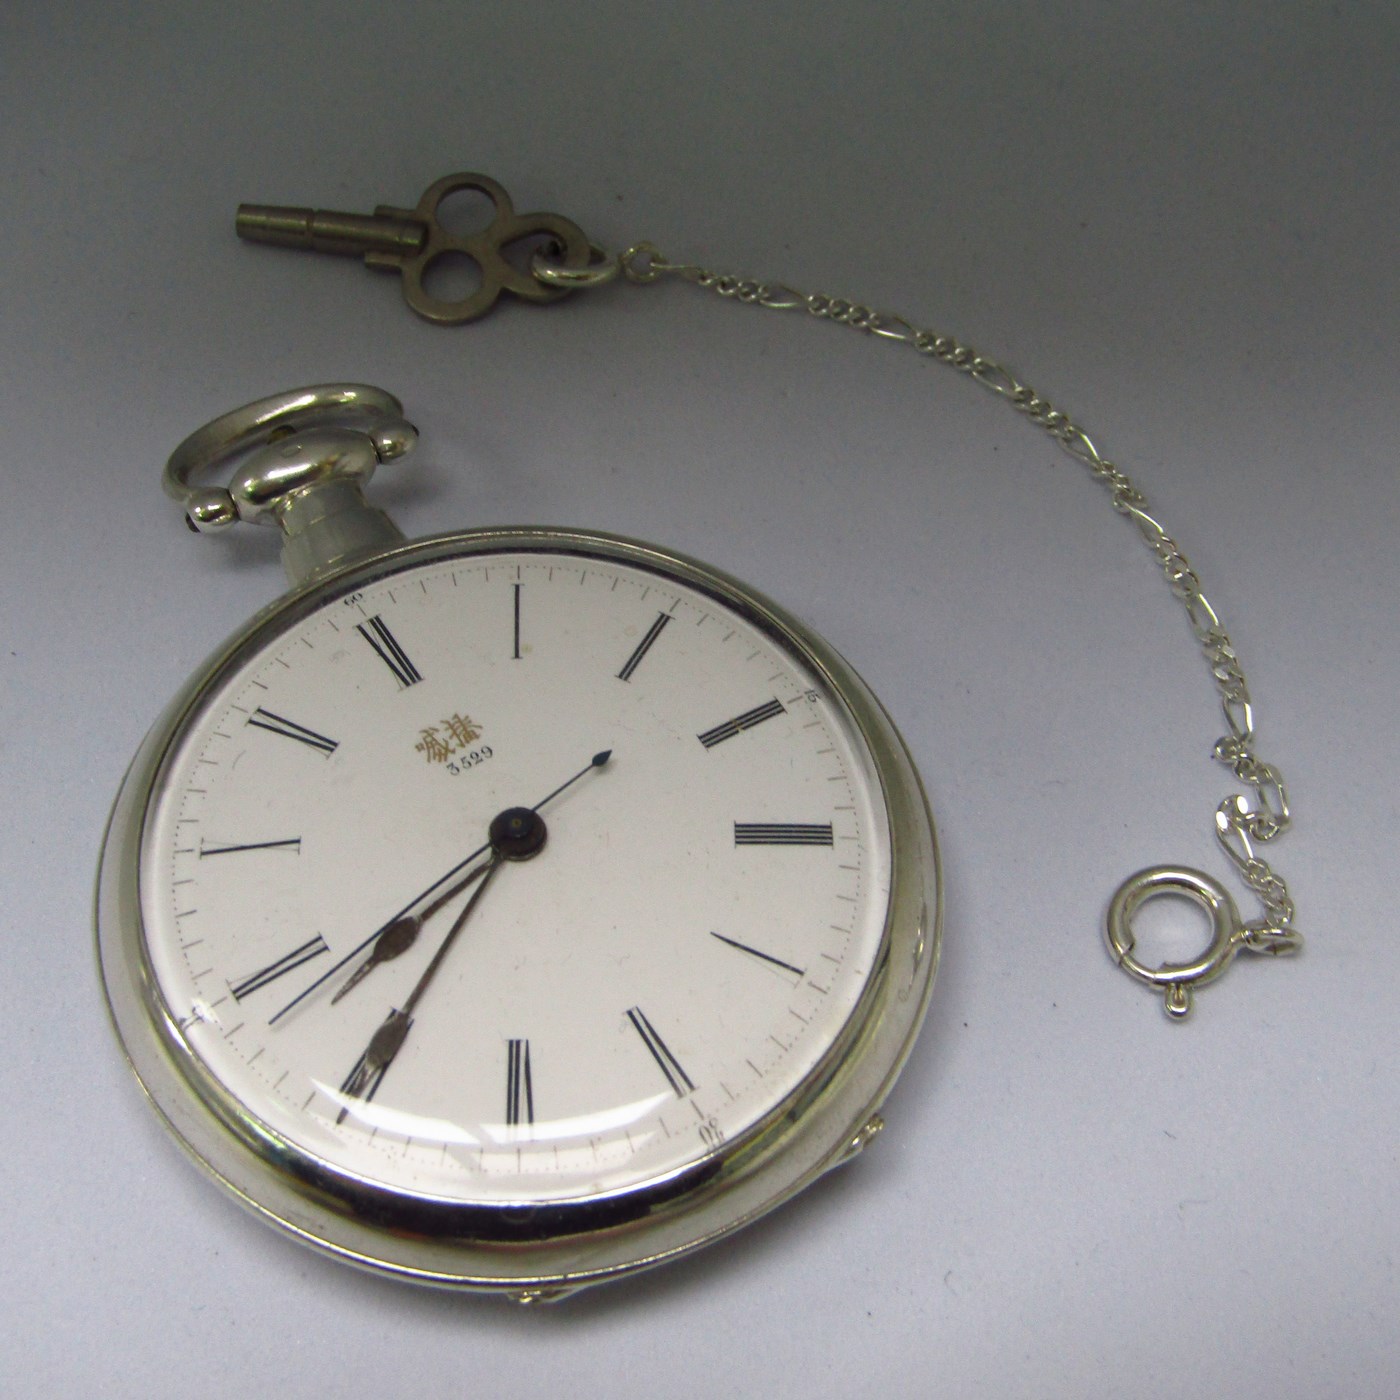 Bovet-Fleurier. Reloj Chinesse de Bolsillo, lepine.